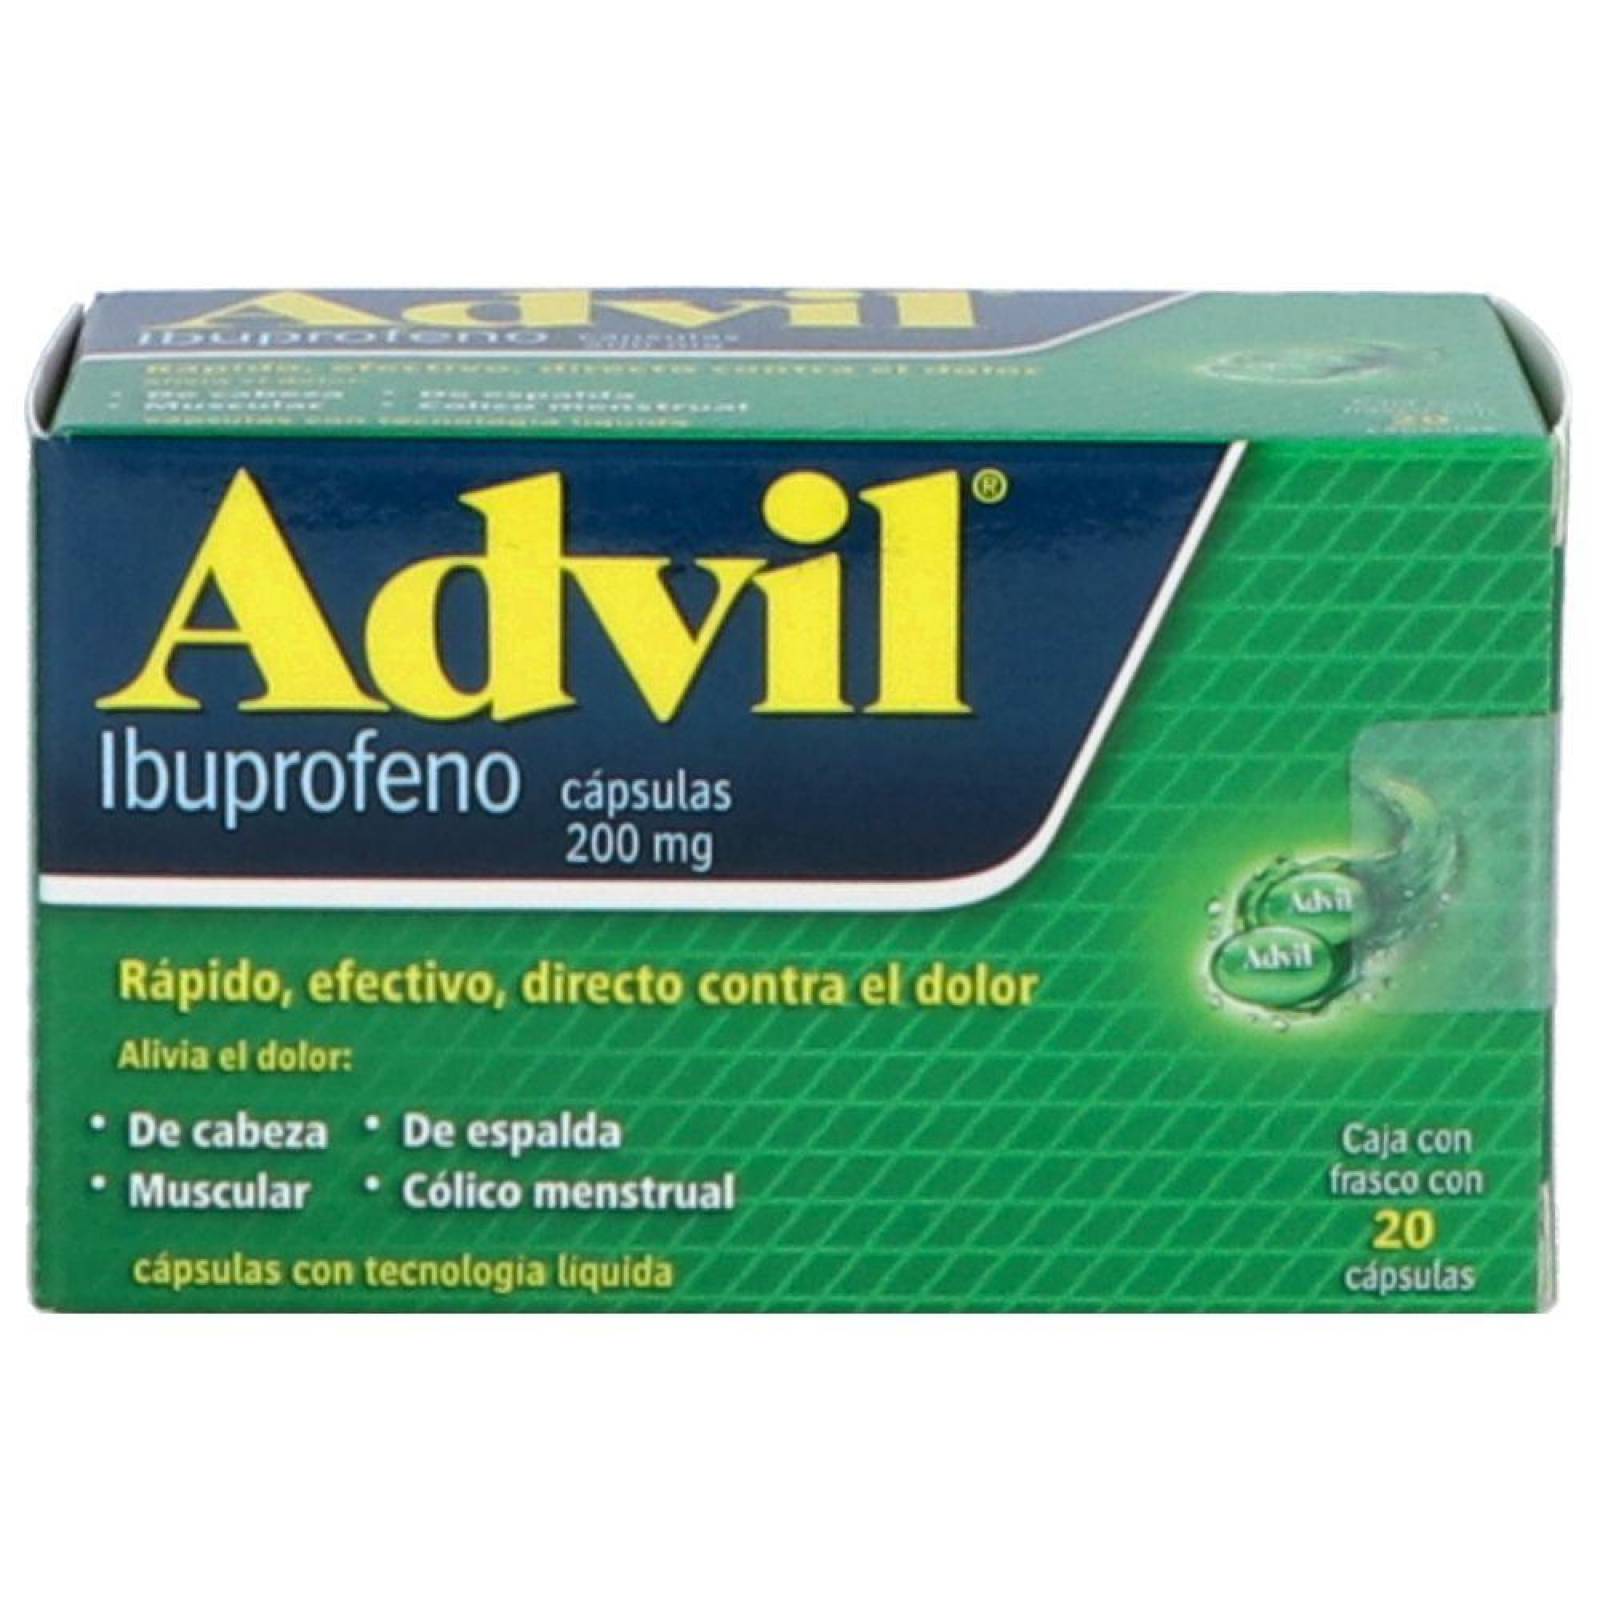 Advil 200 mg Caja Con Frasco Con 20 Cápsulas 